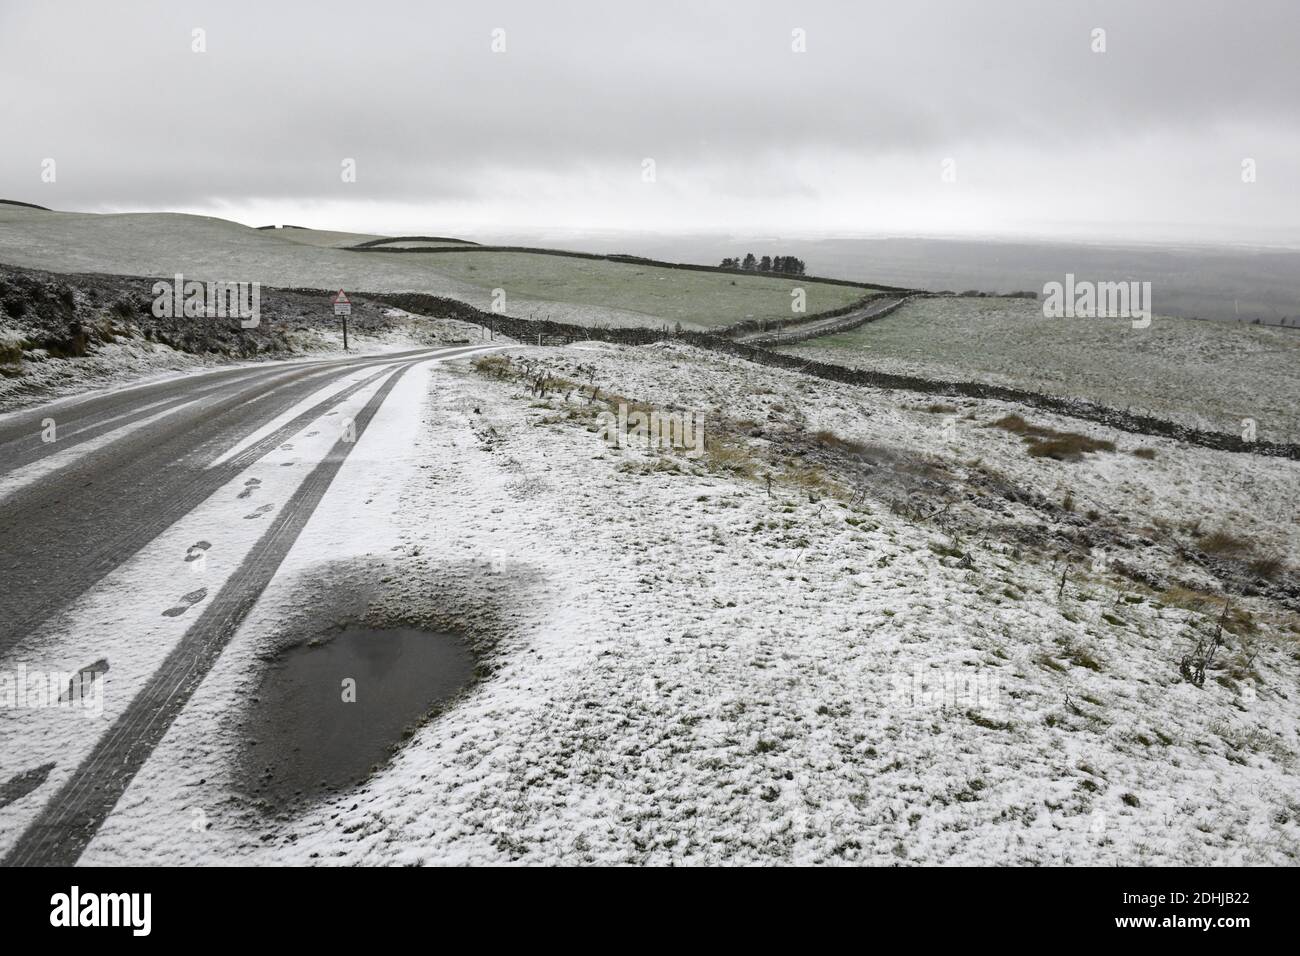 La photo est une scène neigeuse dans les Yorkshire Dales au-dessus de Leyburn. Météo neige hiver neige neige neige neige neige neige neige Banque D'Images